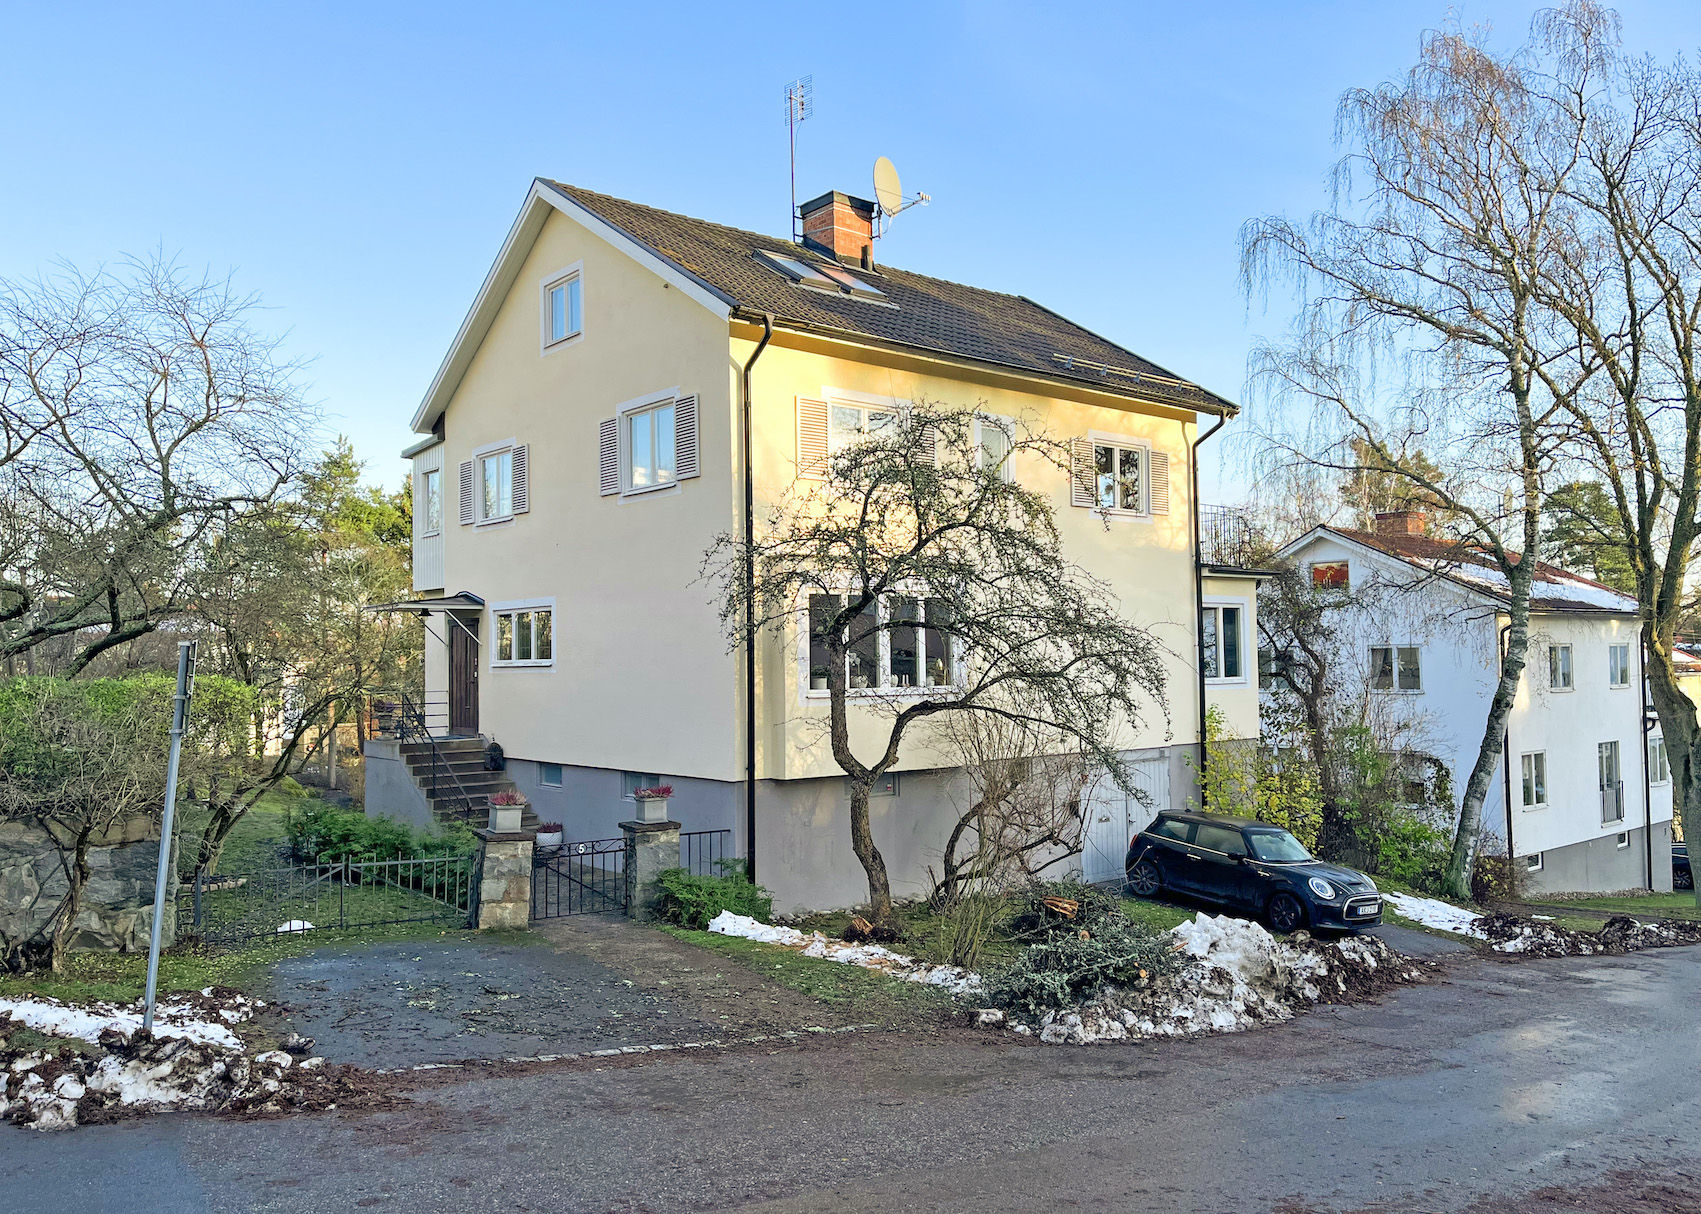 Exklusiva hem i hela Bromma, både exklusiva villor och exklusiva bostadsrätter.